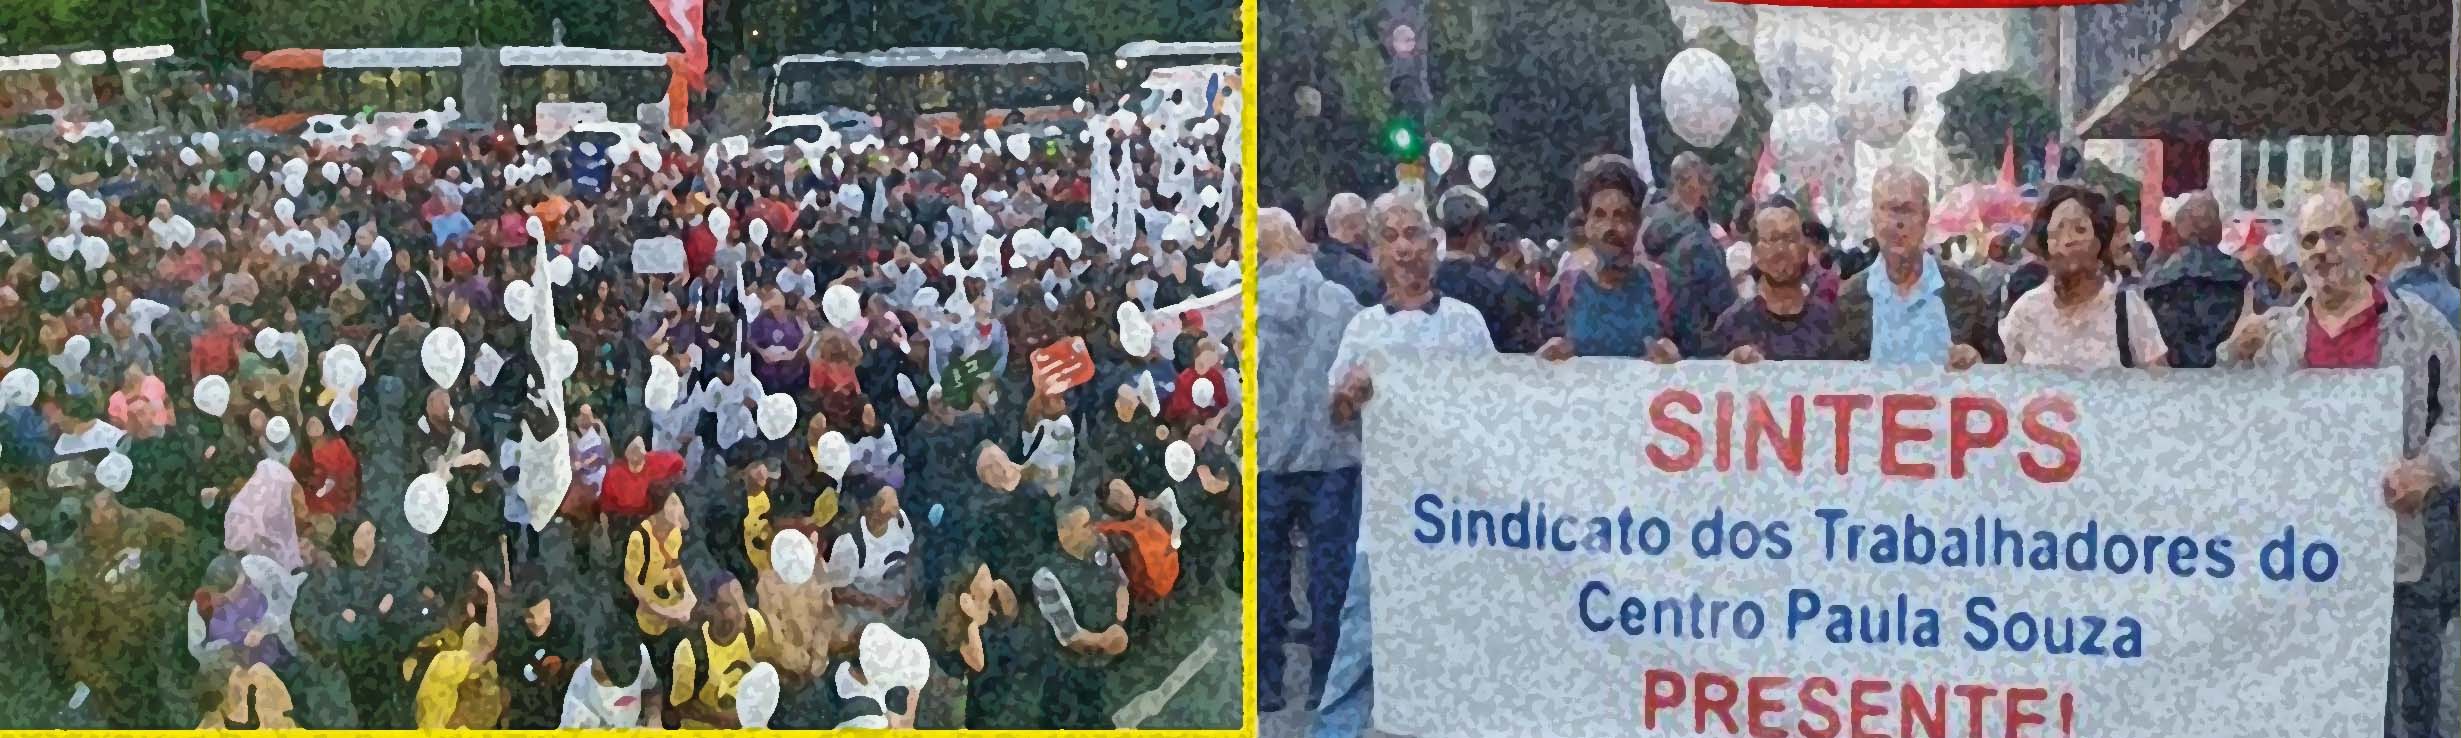 CD do Sinteps indica início da greve para 8/8 com ato em SP. Vamos ampliar a luta: assembleias setoriais até 5/7